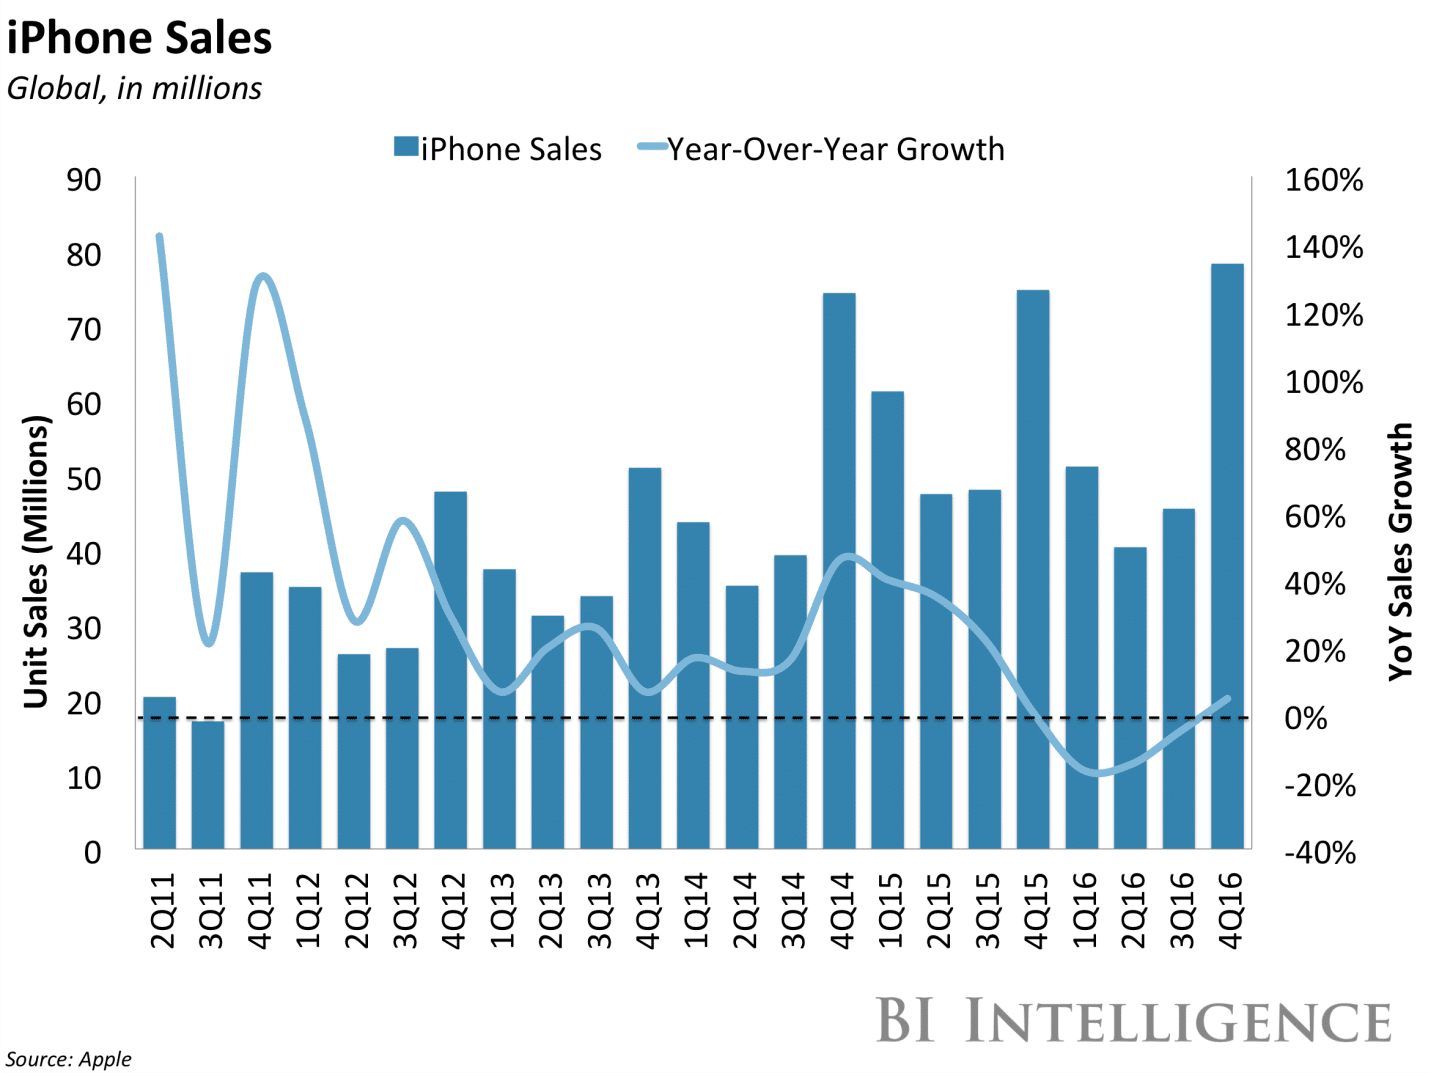 iPhone Sales Statistics